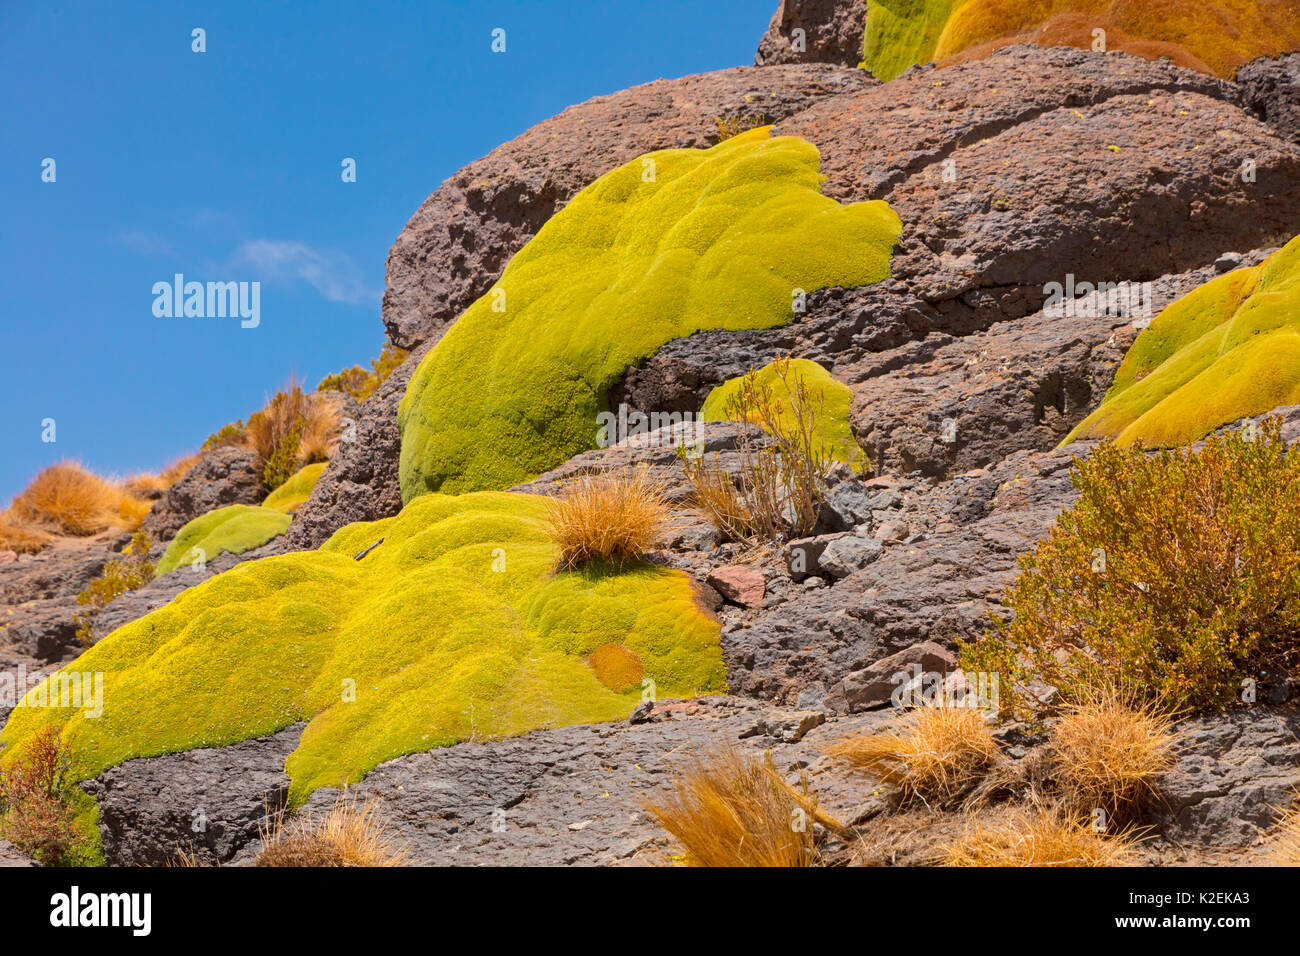 Coussin géant Azorella compacta (plantes). La Bolivie, décembre. Banque D'Images